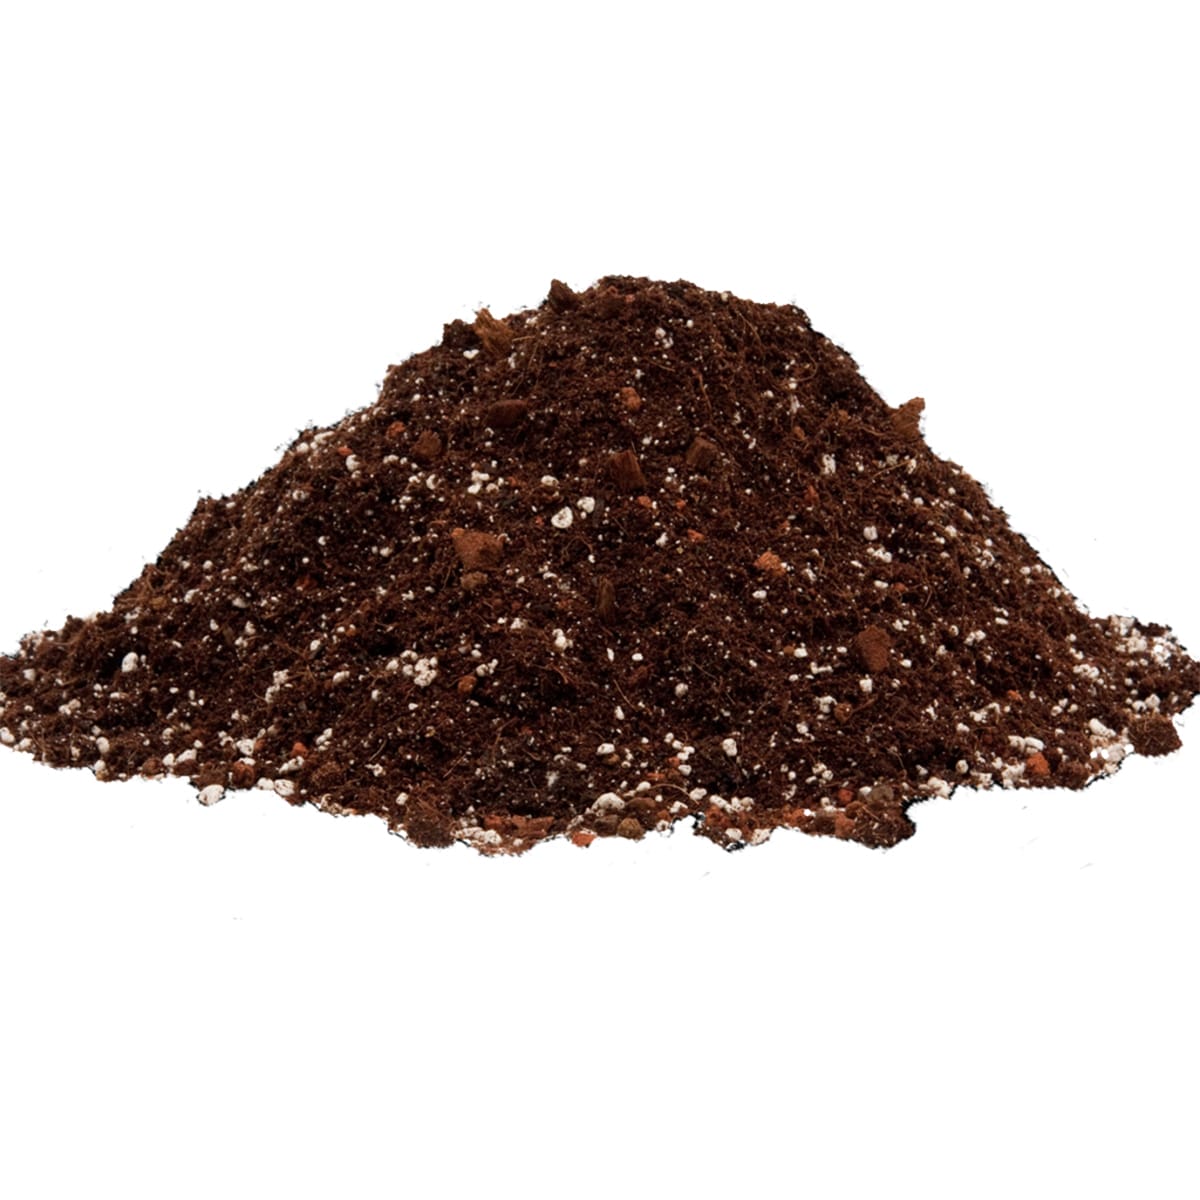 Royal Gold Basement Fertilizer Mix Soil